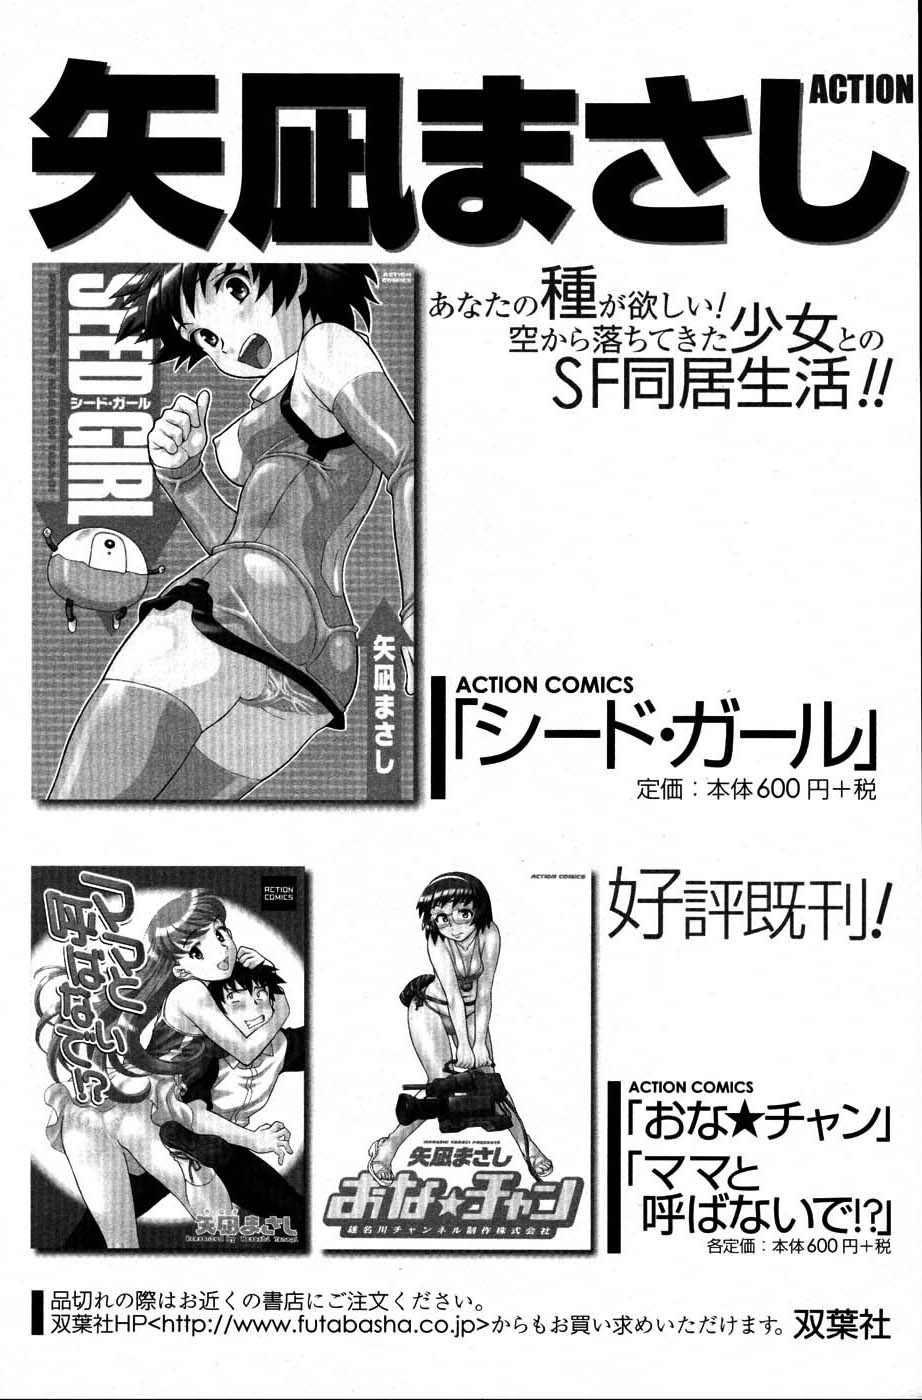 メンズヤングスペシャルIKAZUCHI雷 Vol.3 2007年9月号増刊